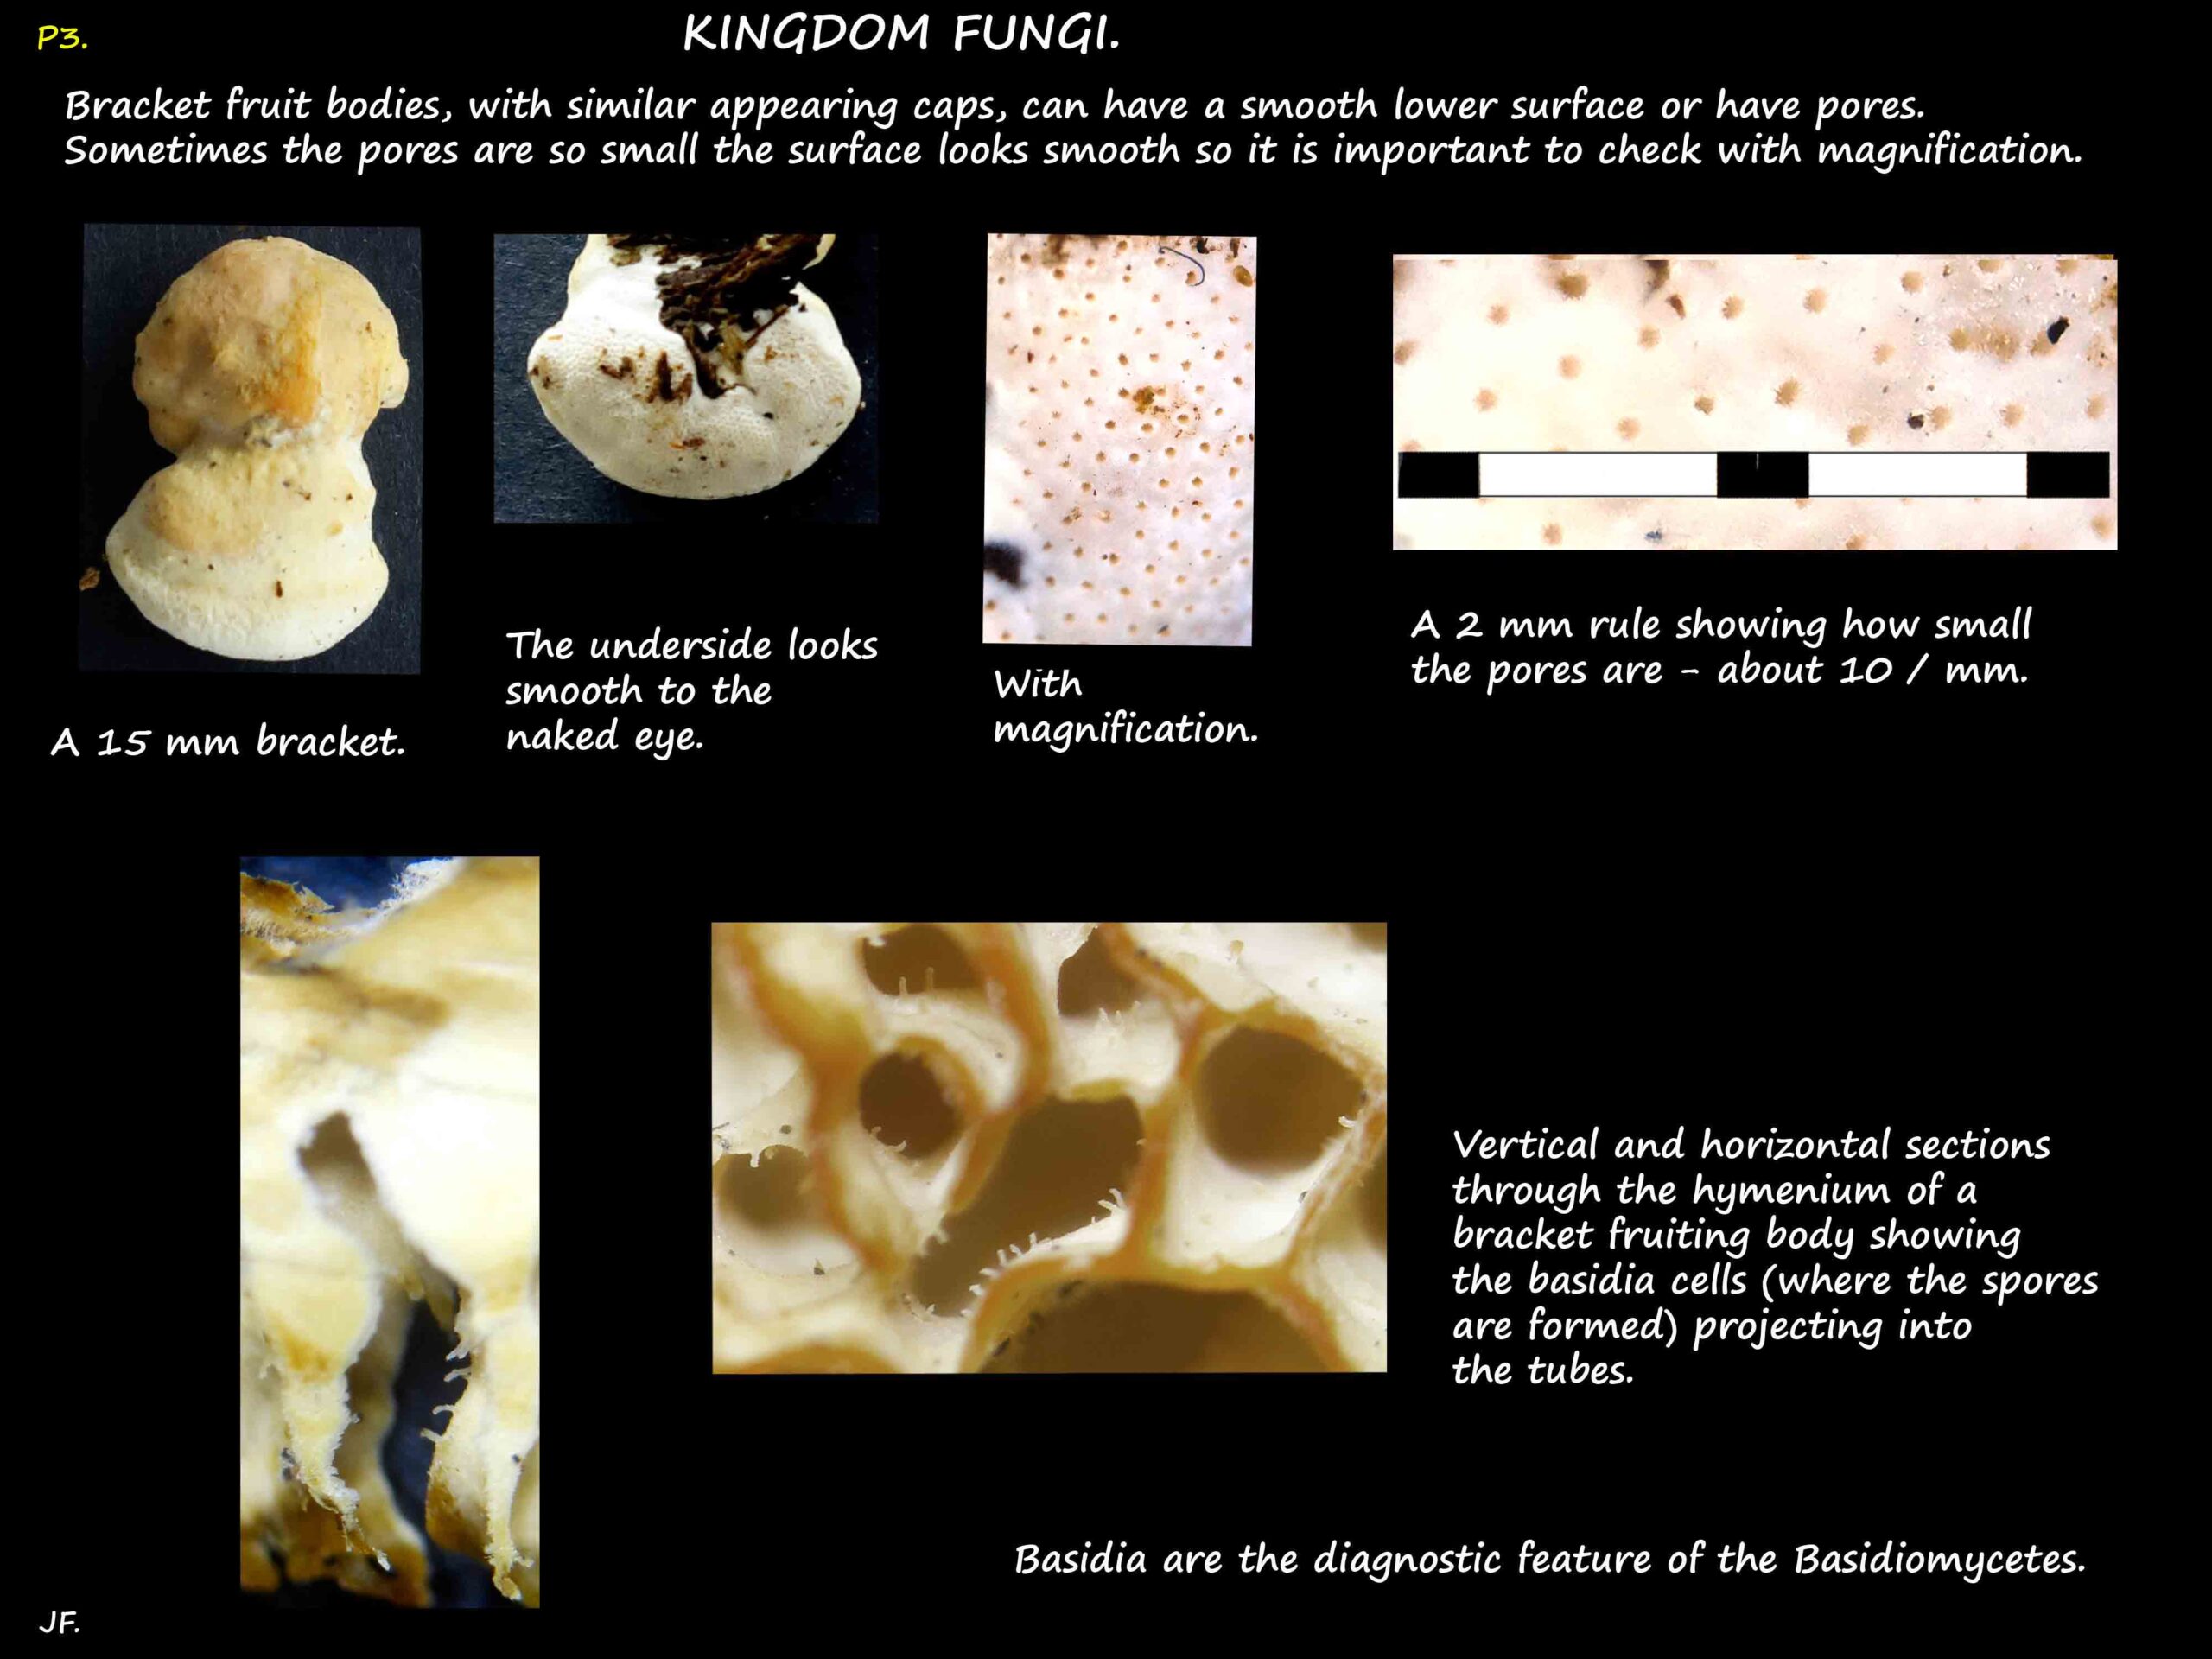 2 Pore size & basidia cells in Polypore fungi